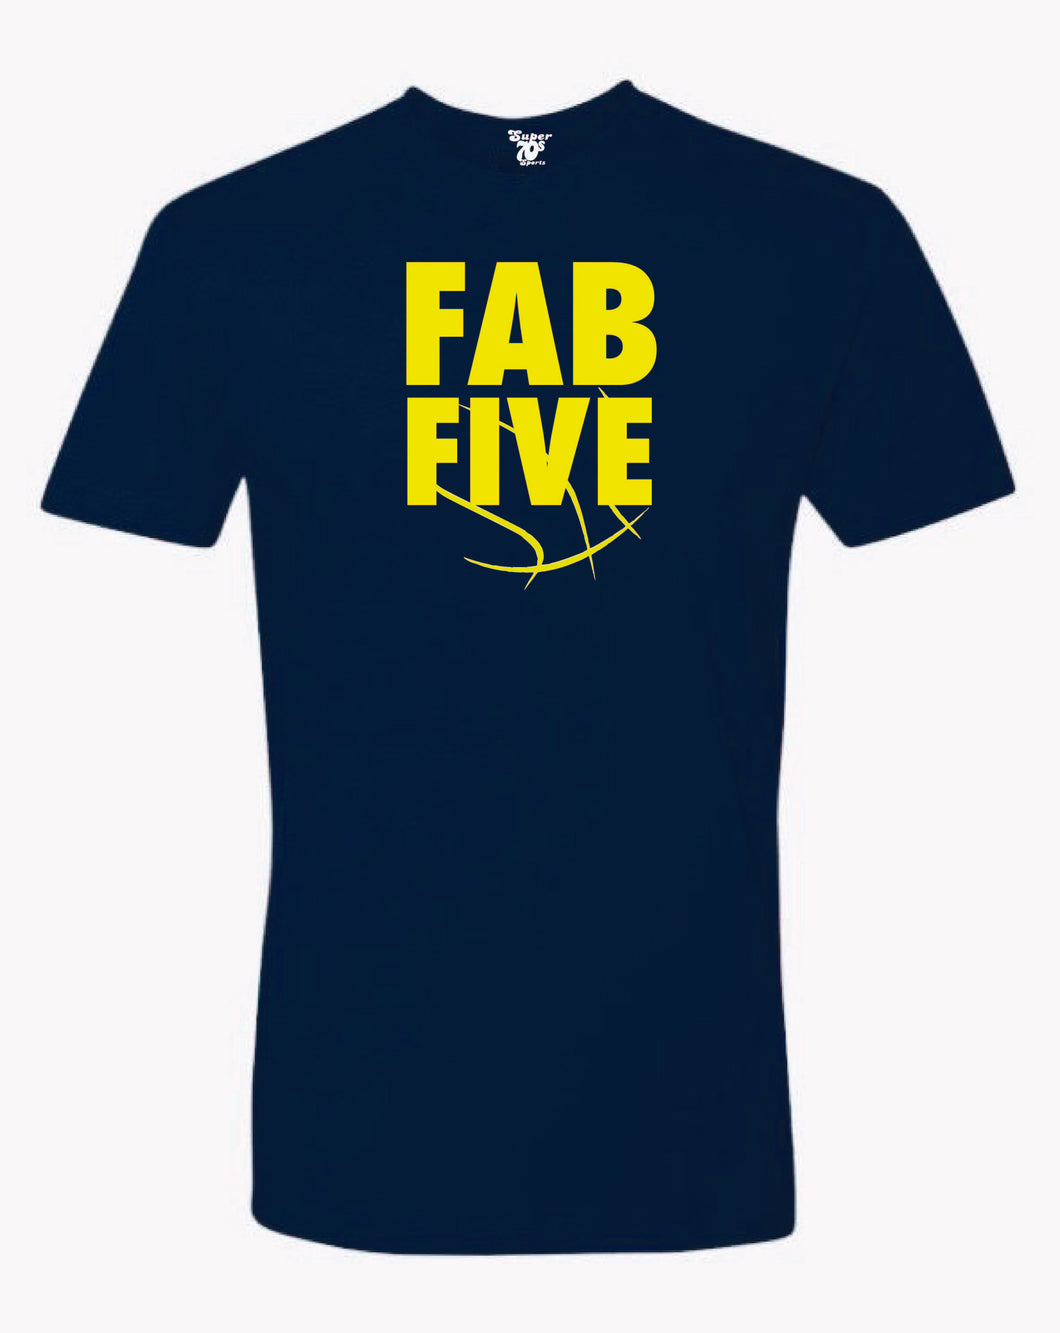 Fab Five Tee